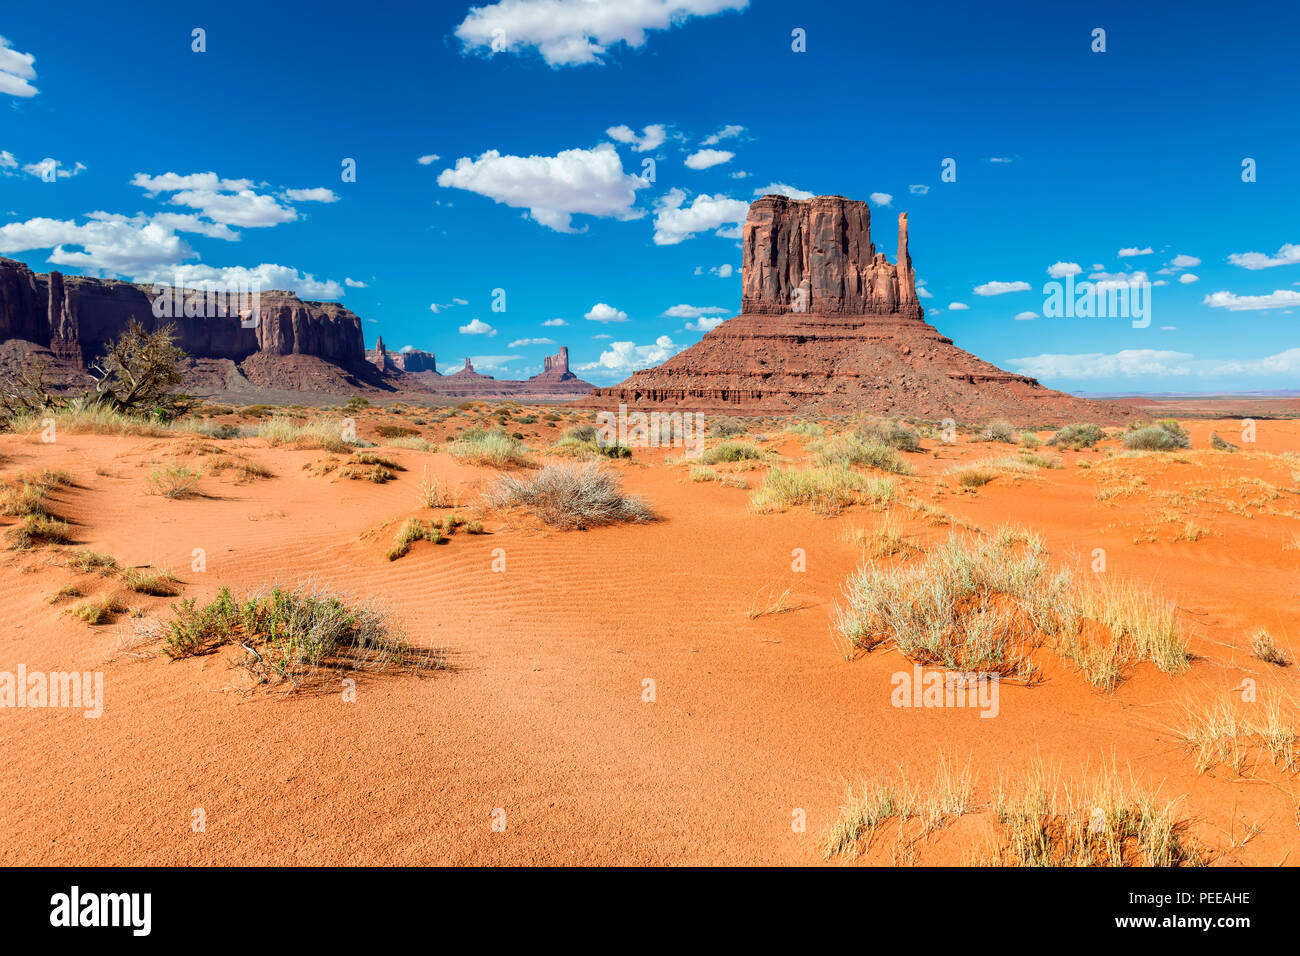 Monument valley, Arizona Stock Photo